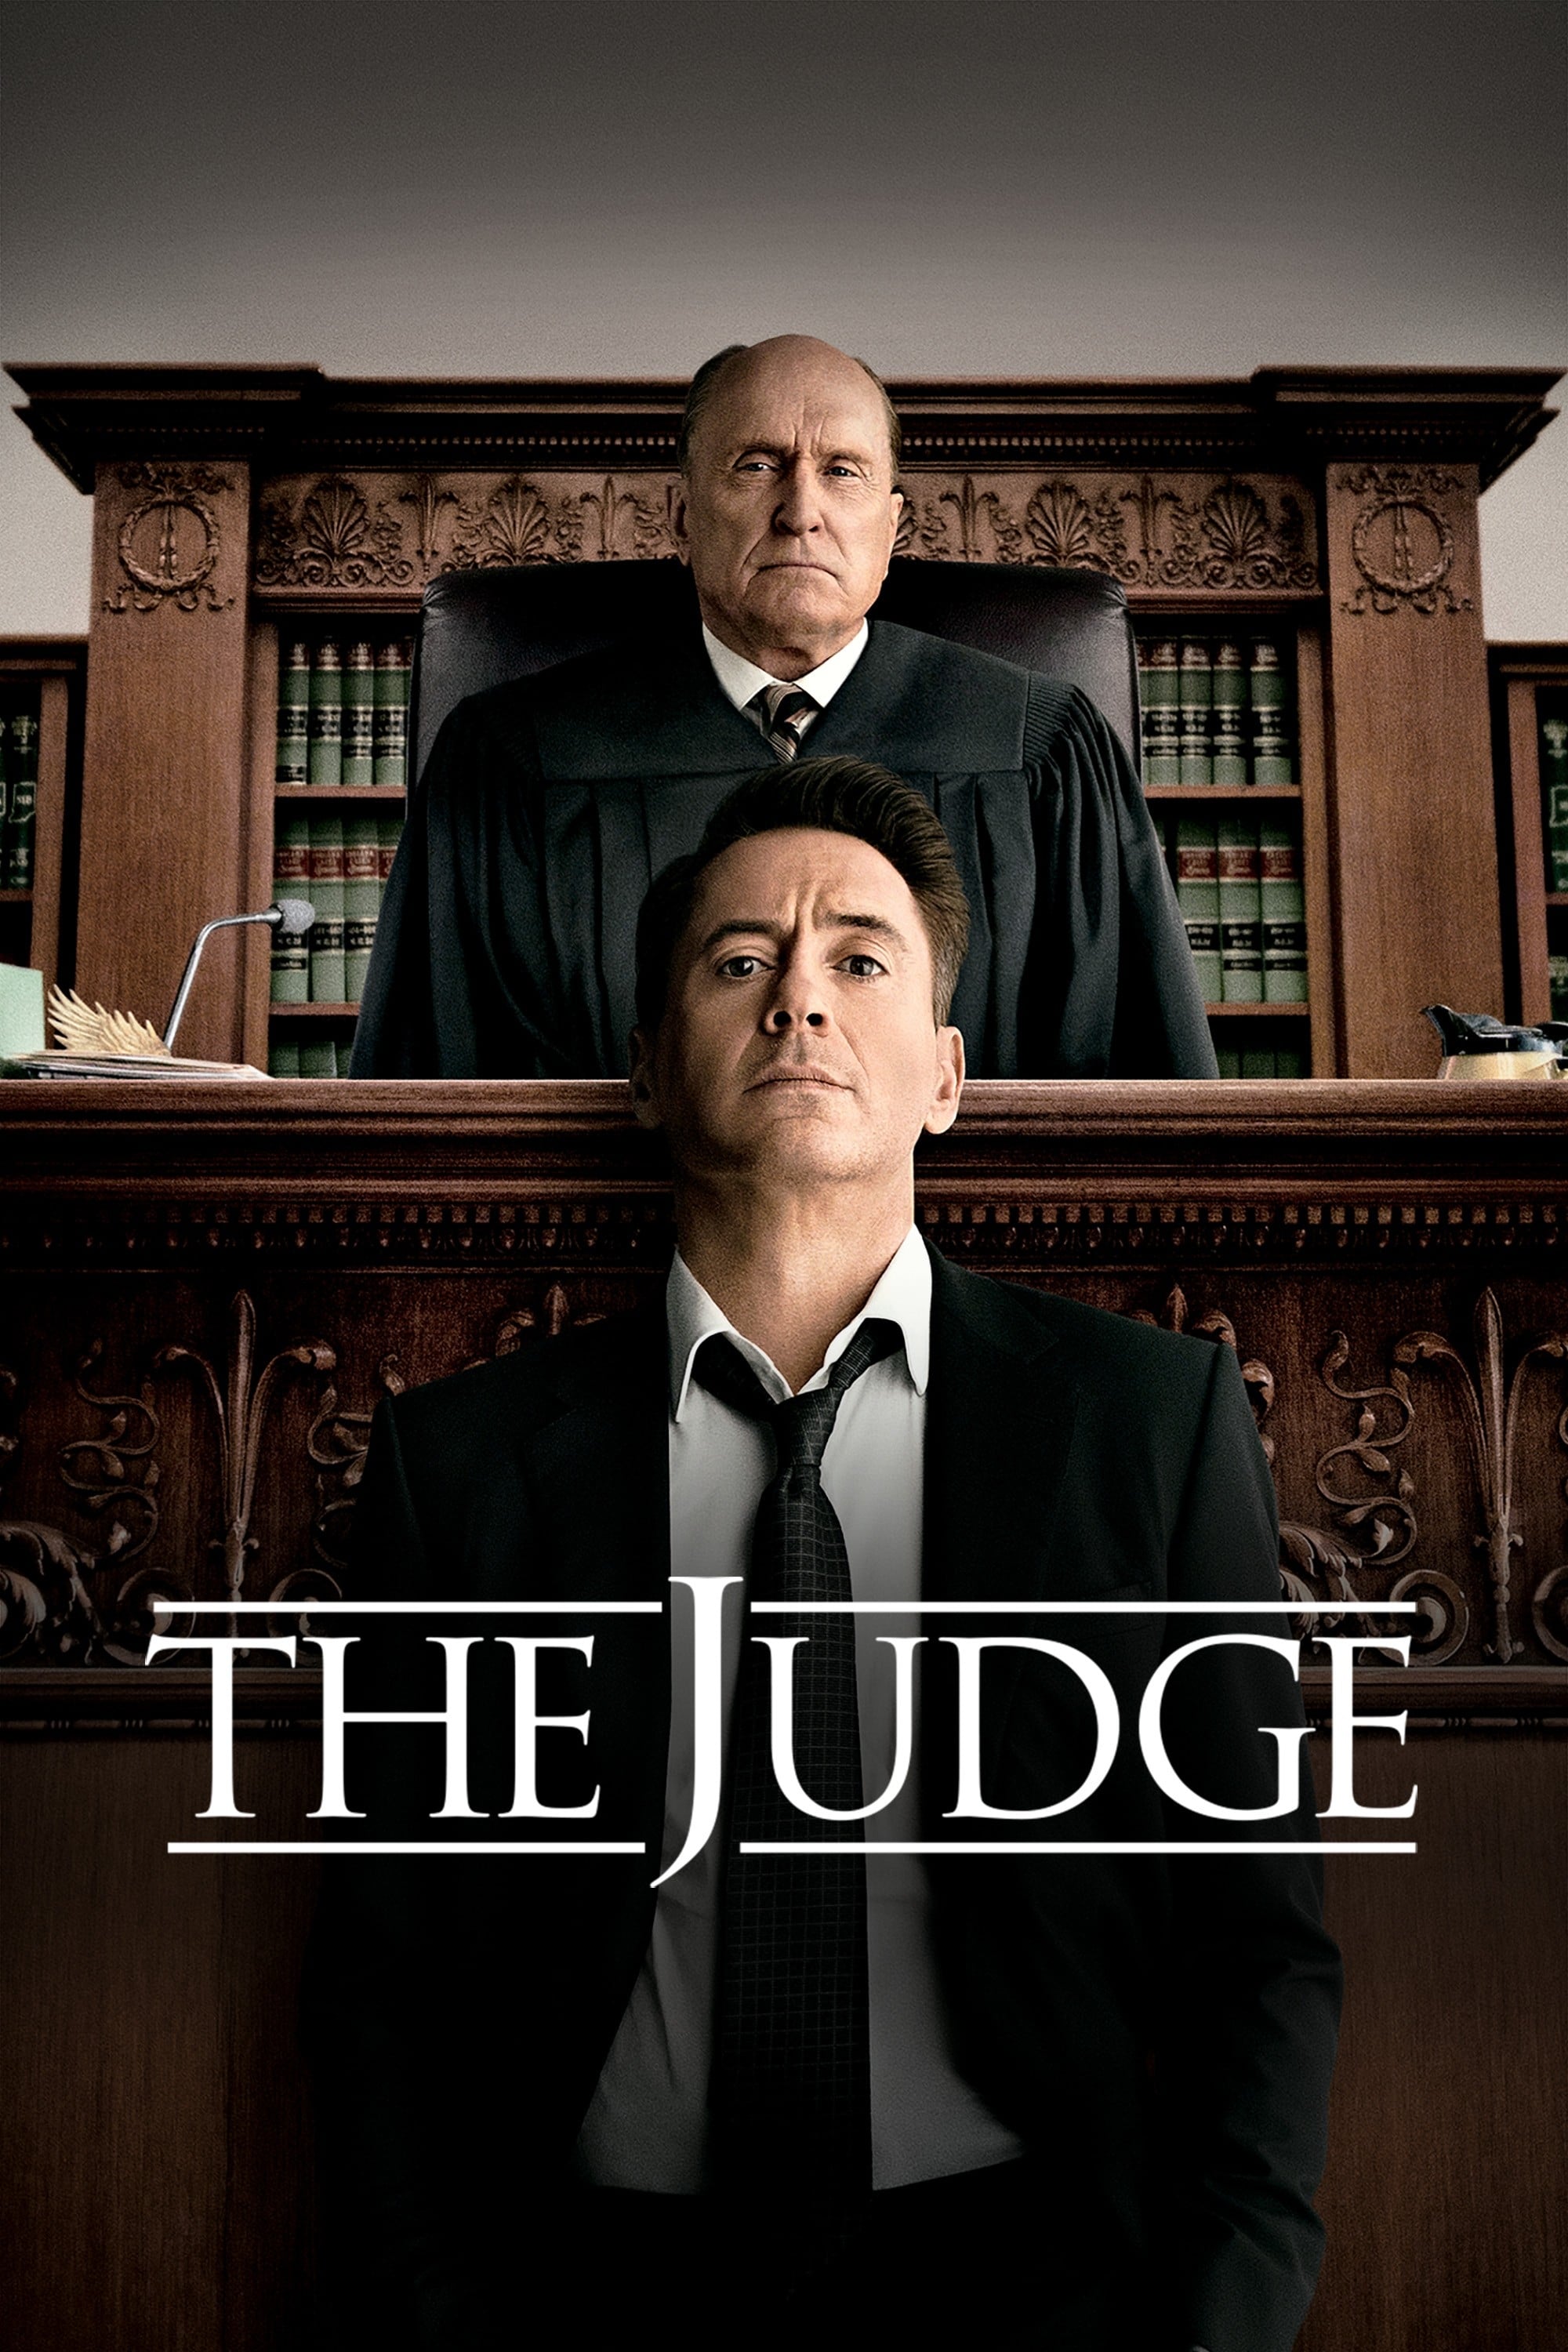 Der Richter - Recht oder Ehre